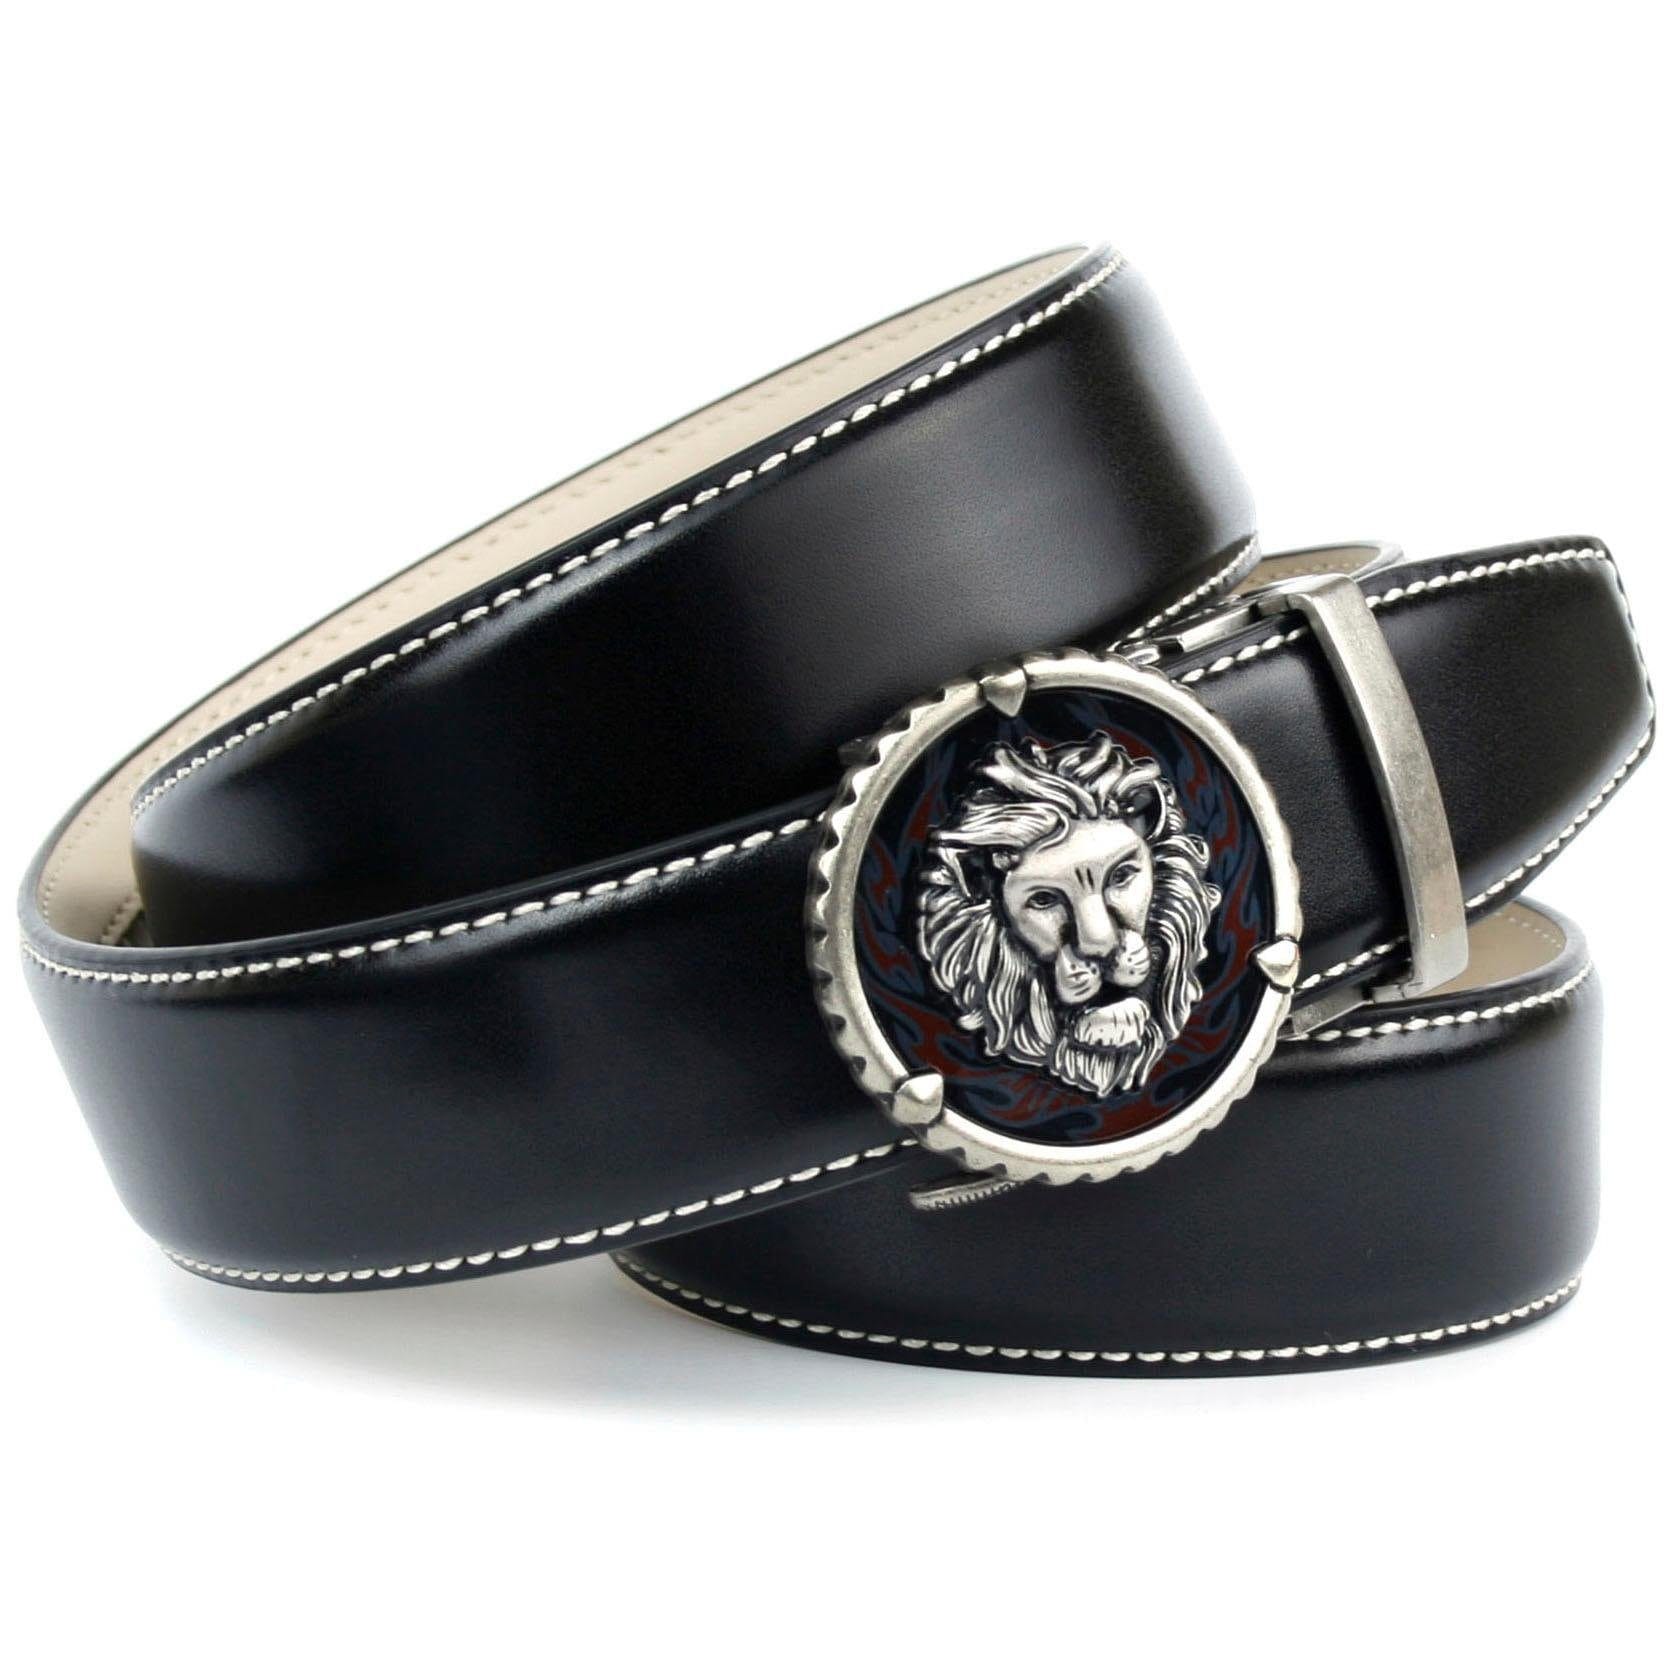 Anthoni Crown Ledergürtel, in schwarz mit Kontrast Stitching in weiss